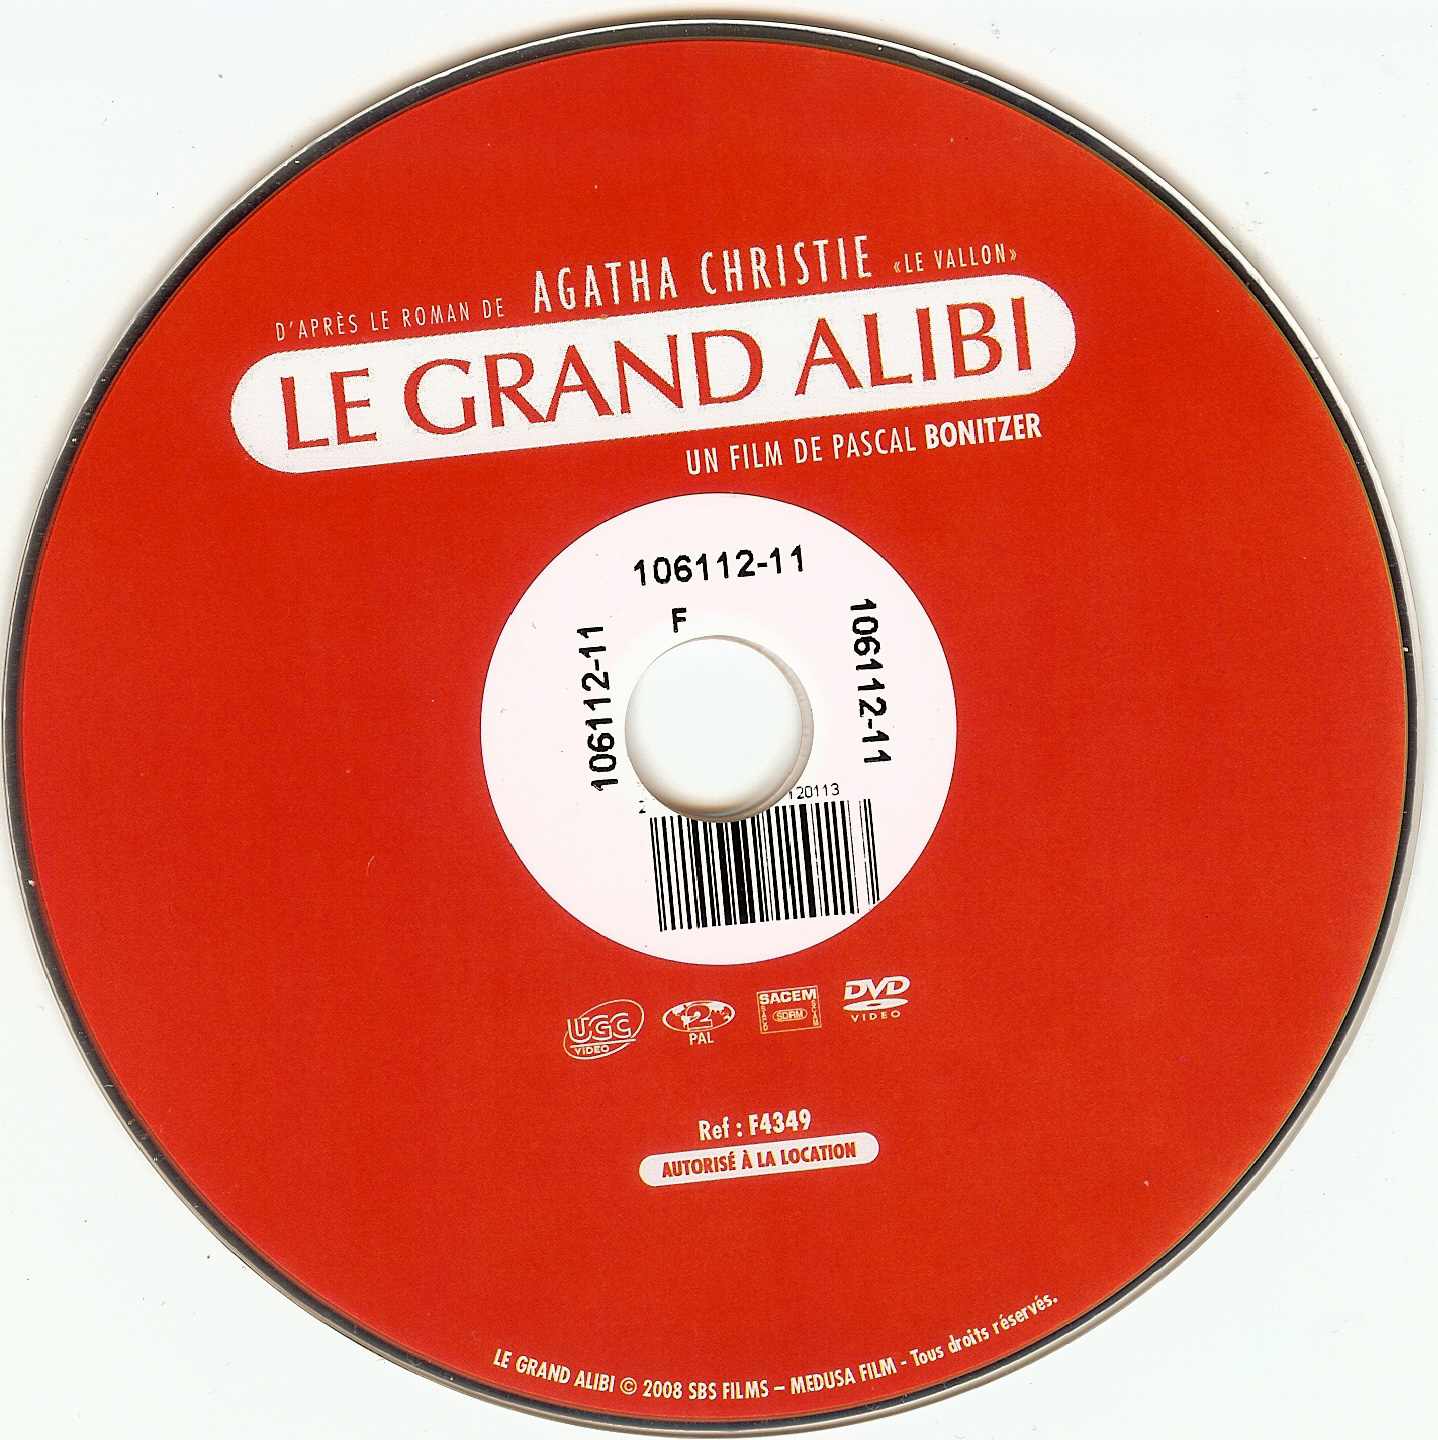 Le grand alibi (2008)